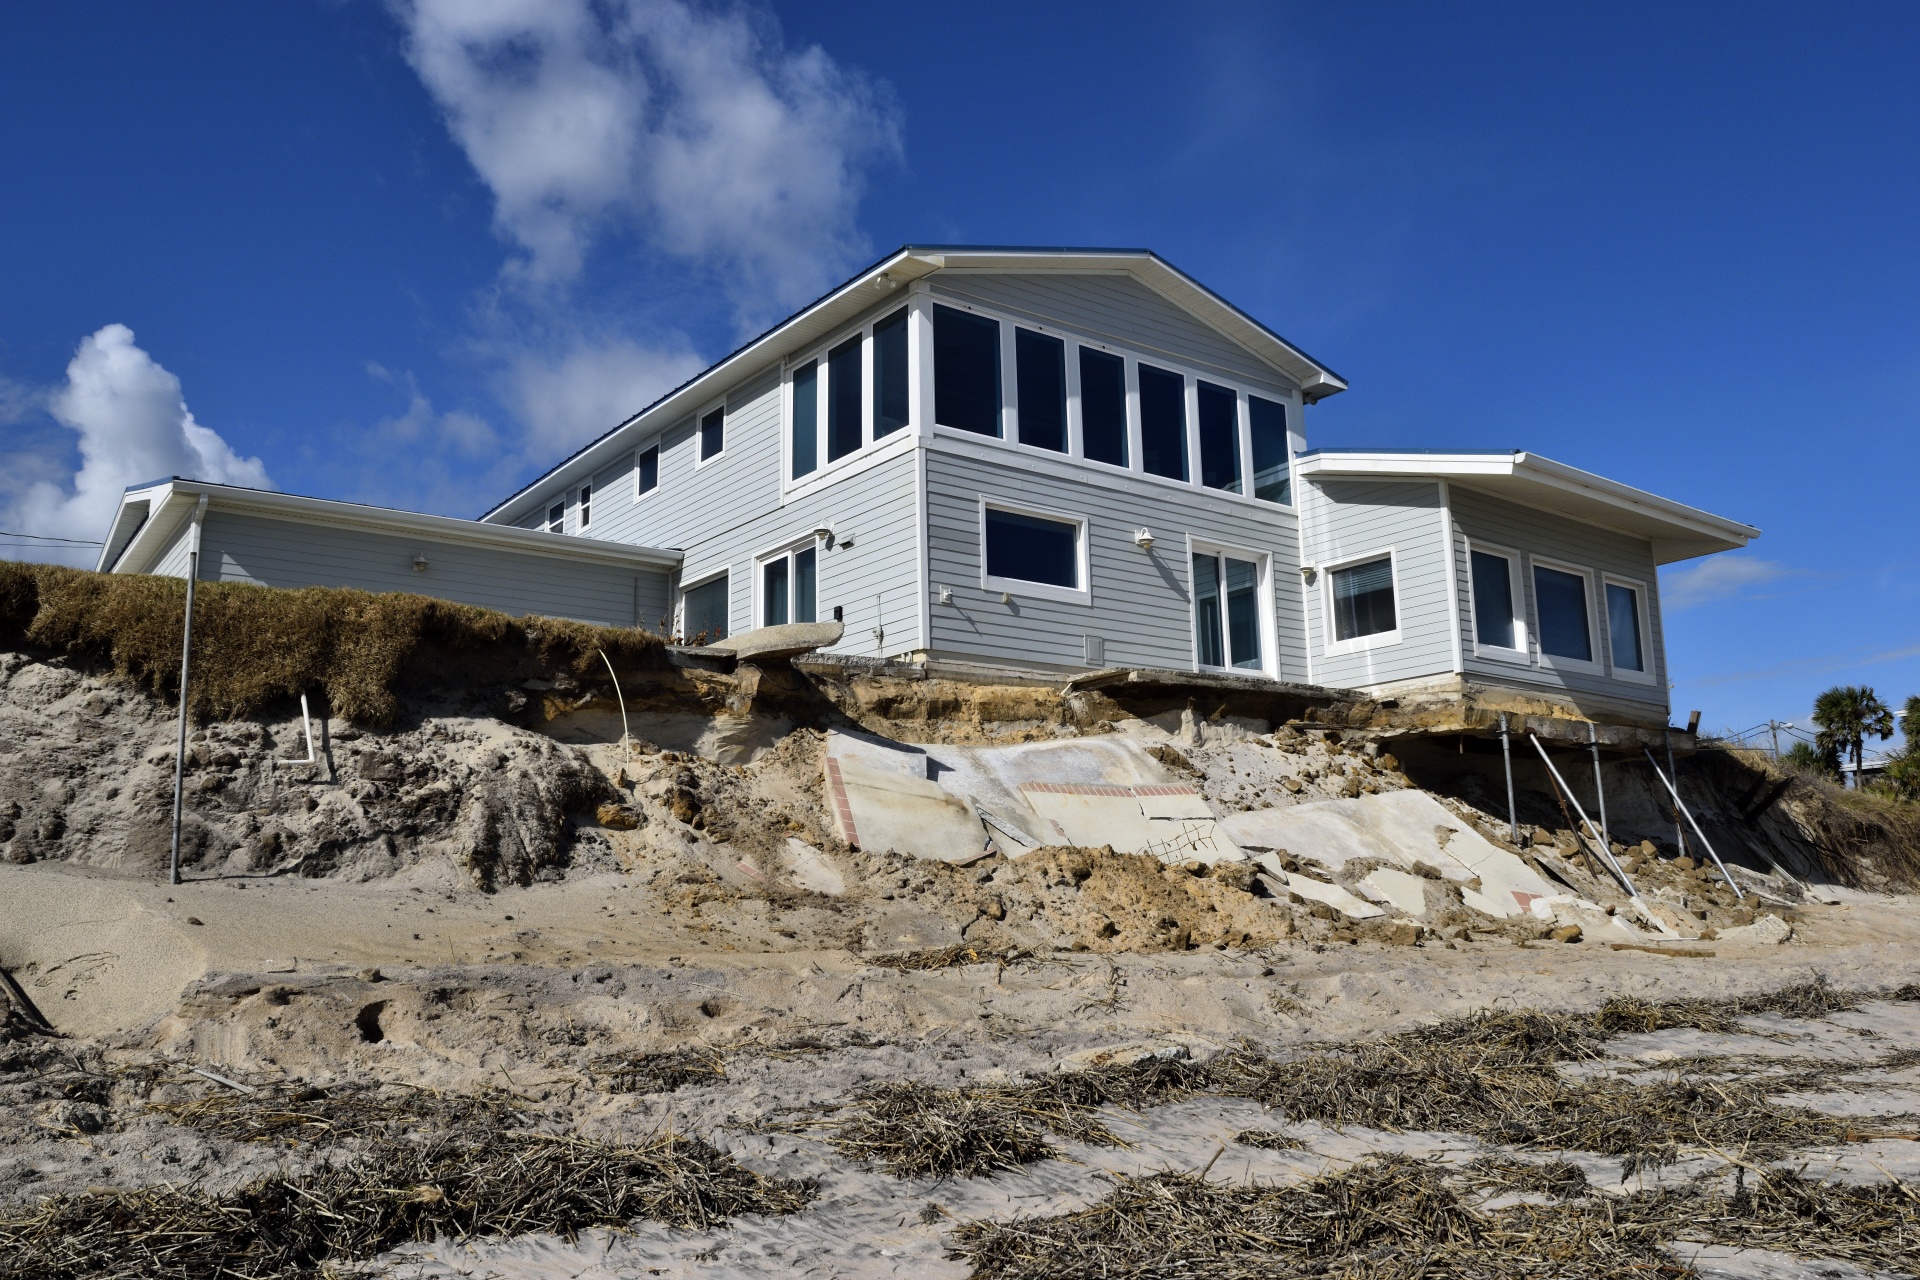 Beach Home Damage By Hurricane